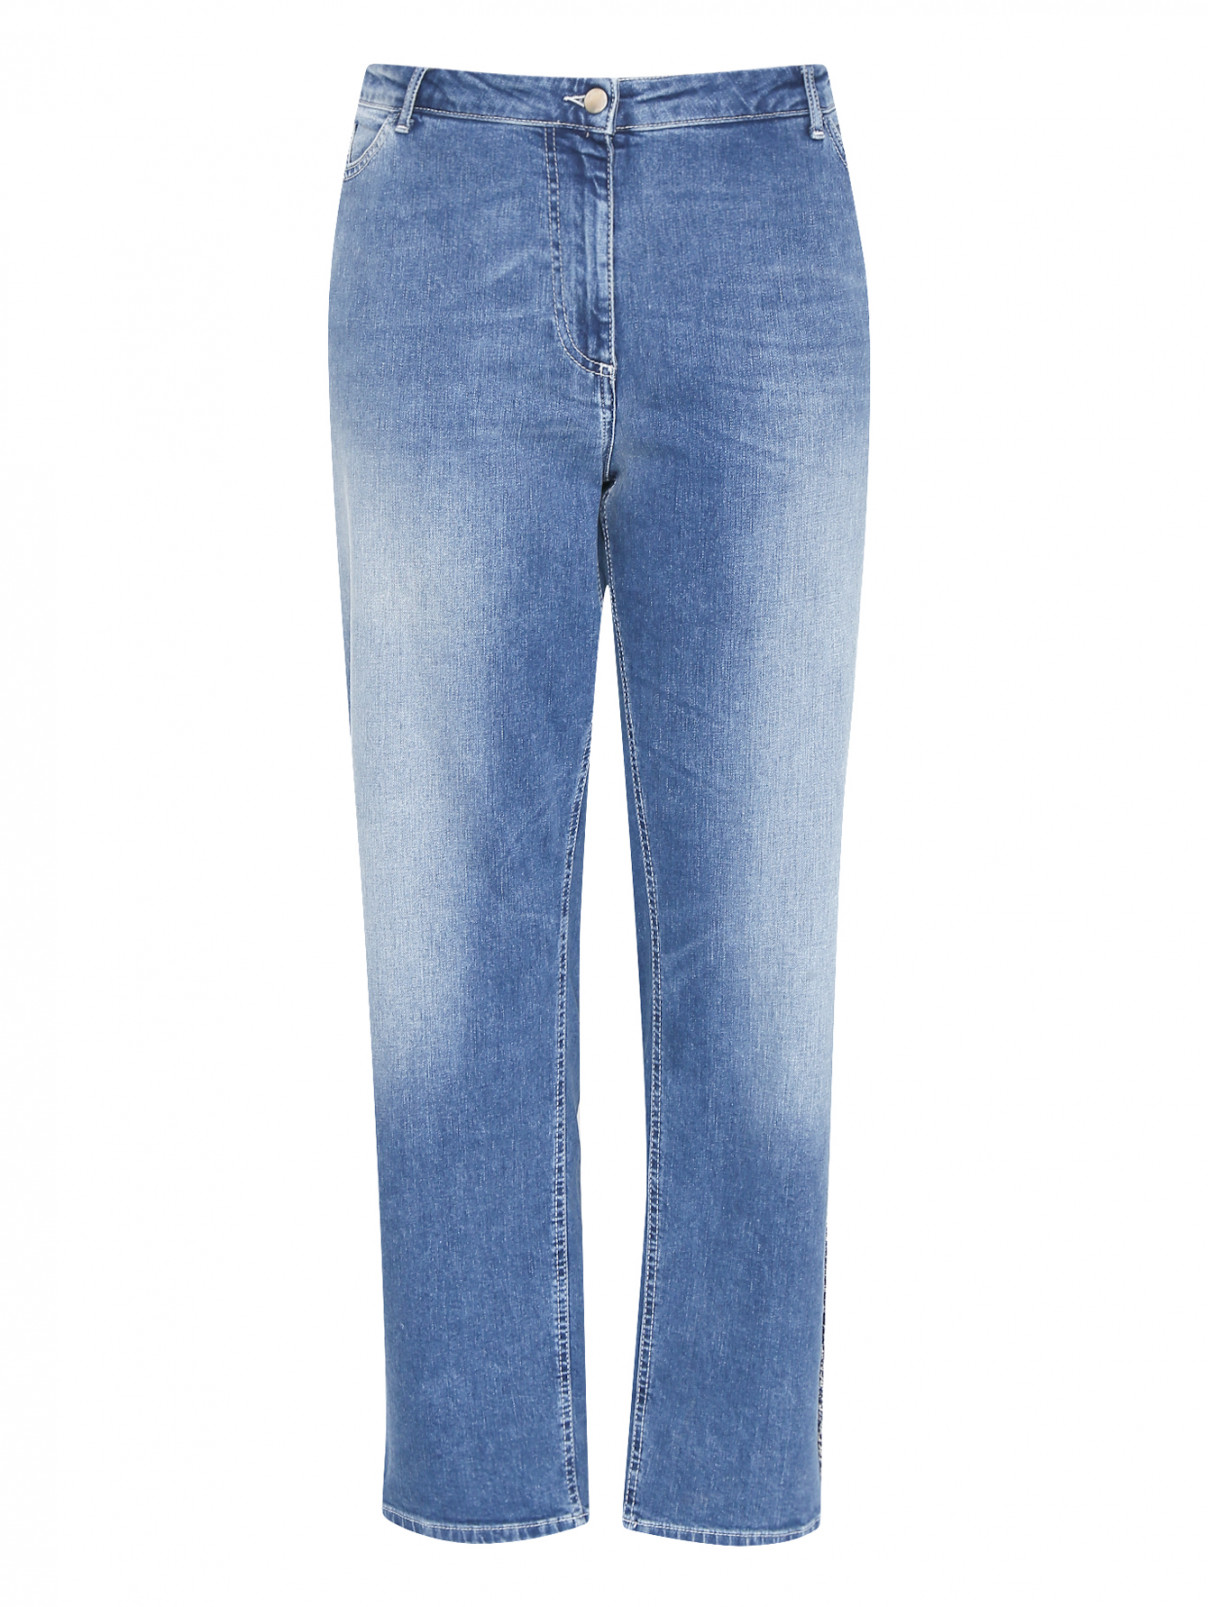 Укороченные джинсы с потертостями Persona by Marina Rinaldi  –  Общий вид  – Цвет:  Синий